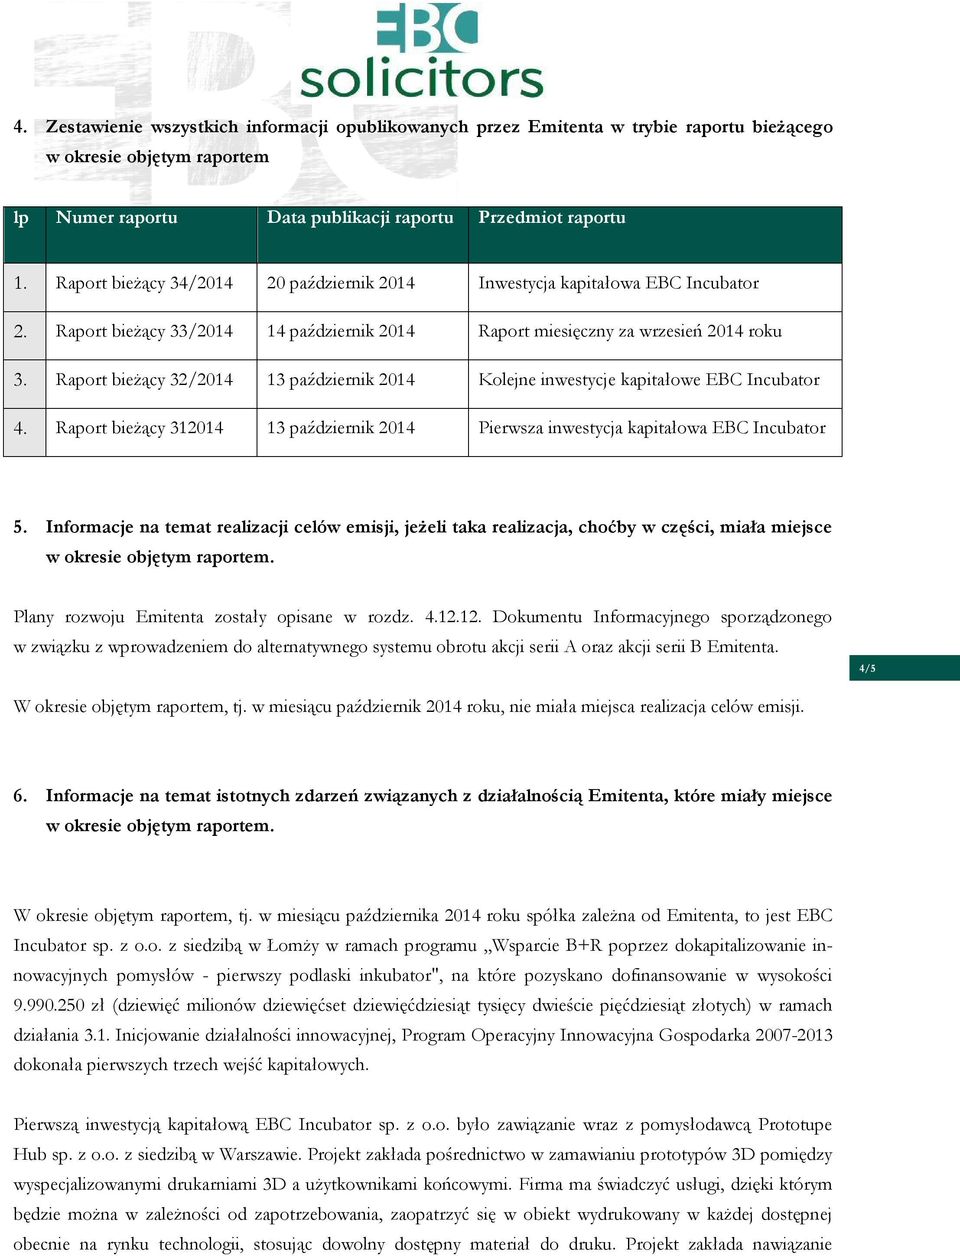 Raport bieżący 32/2014 13 październik 2014 Kolejne inwestycje kapitałowe EBC Incubator 4. Raport bieżący 312014 13 październik 2014 Pierwsza inwestycja kapitałowa EBC Incubator 5.